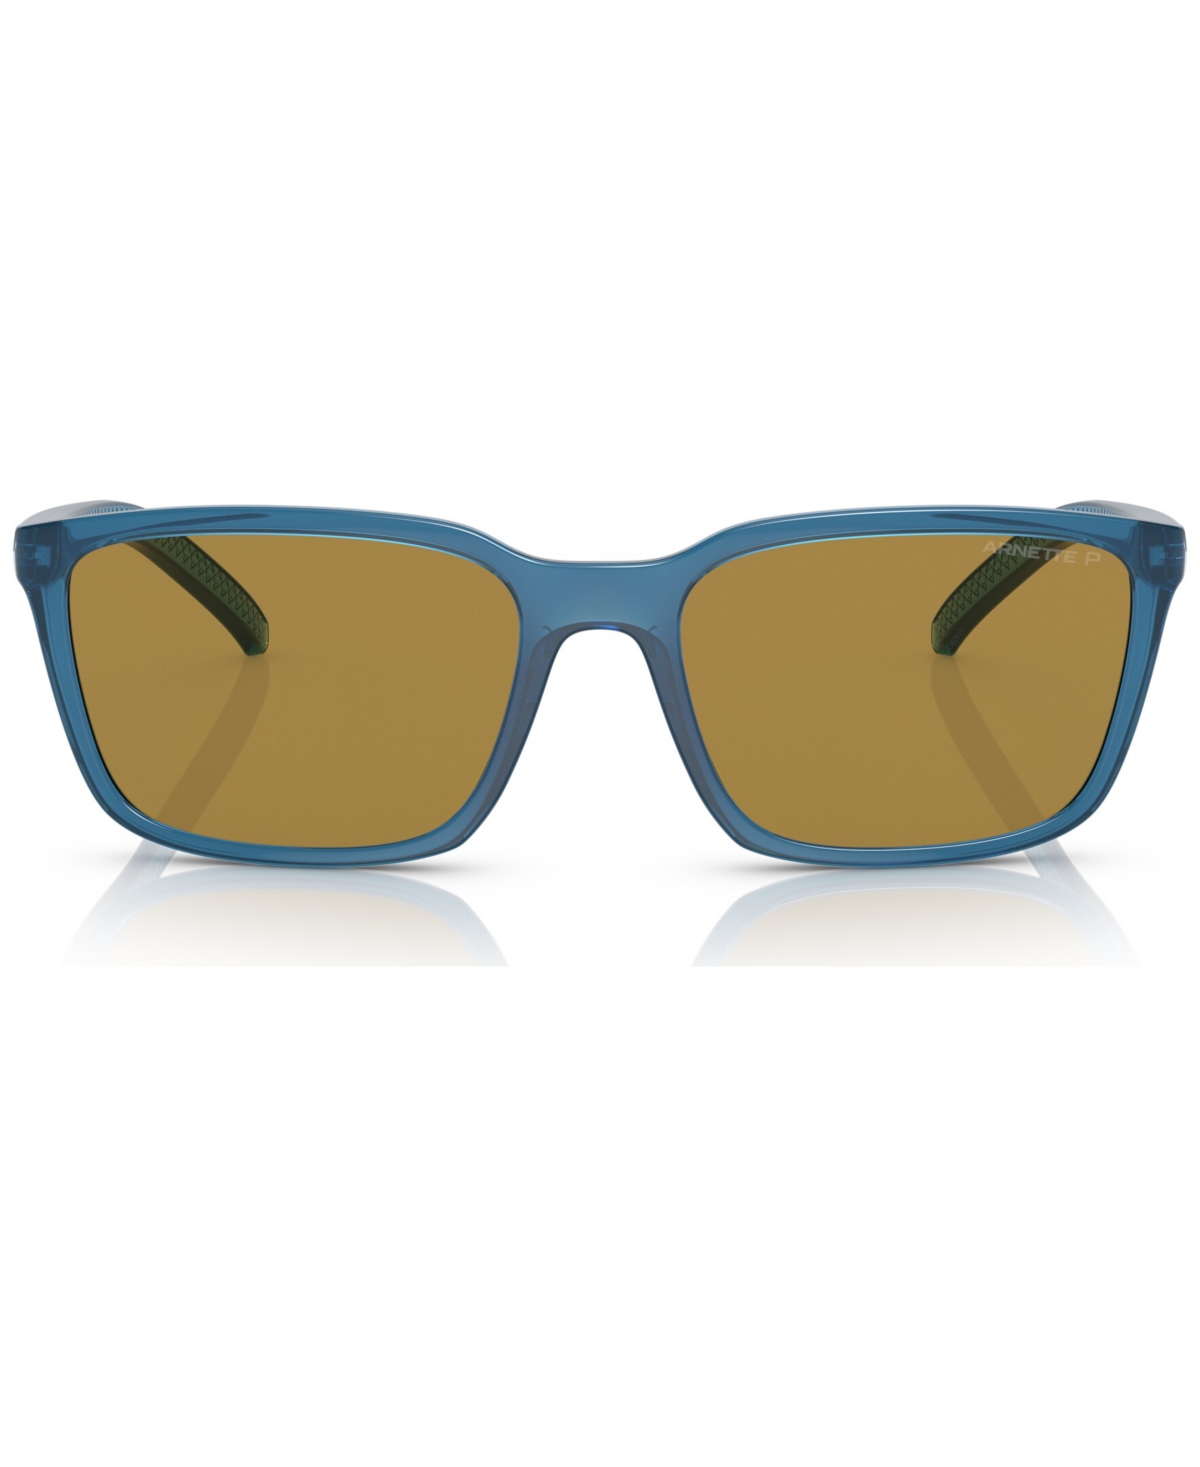 Men's Polarized Sunglasses, AN431156-p - Transparent Blue